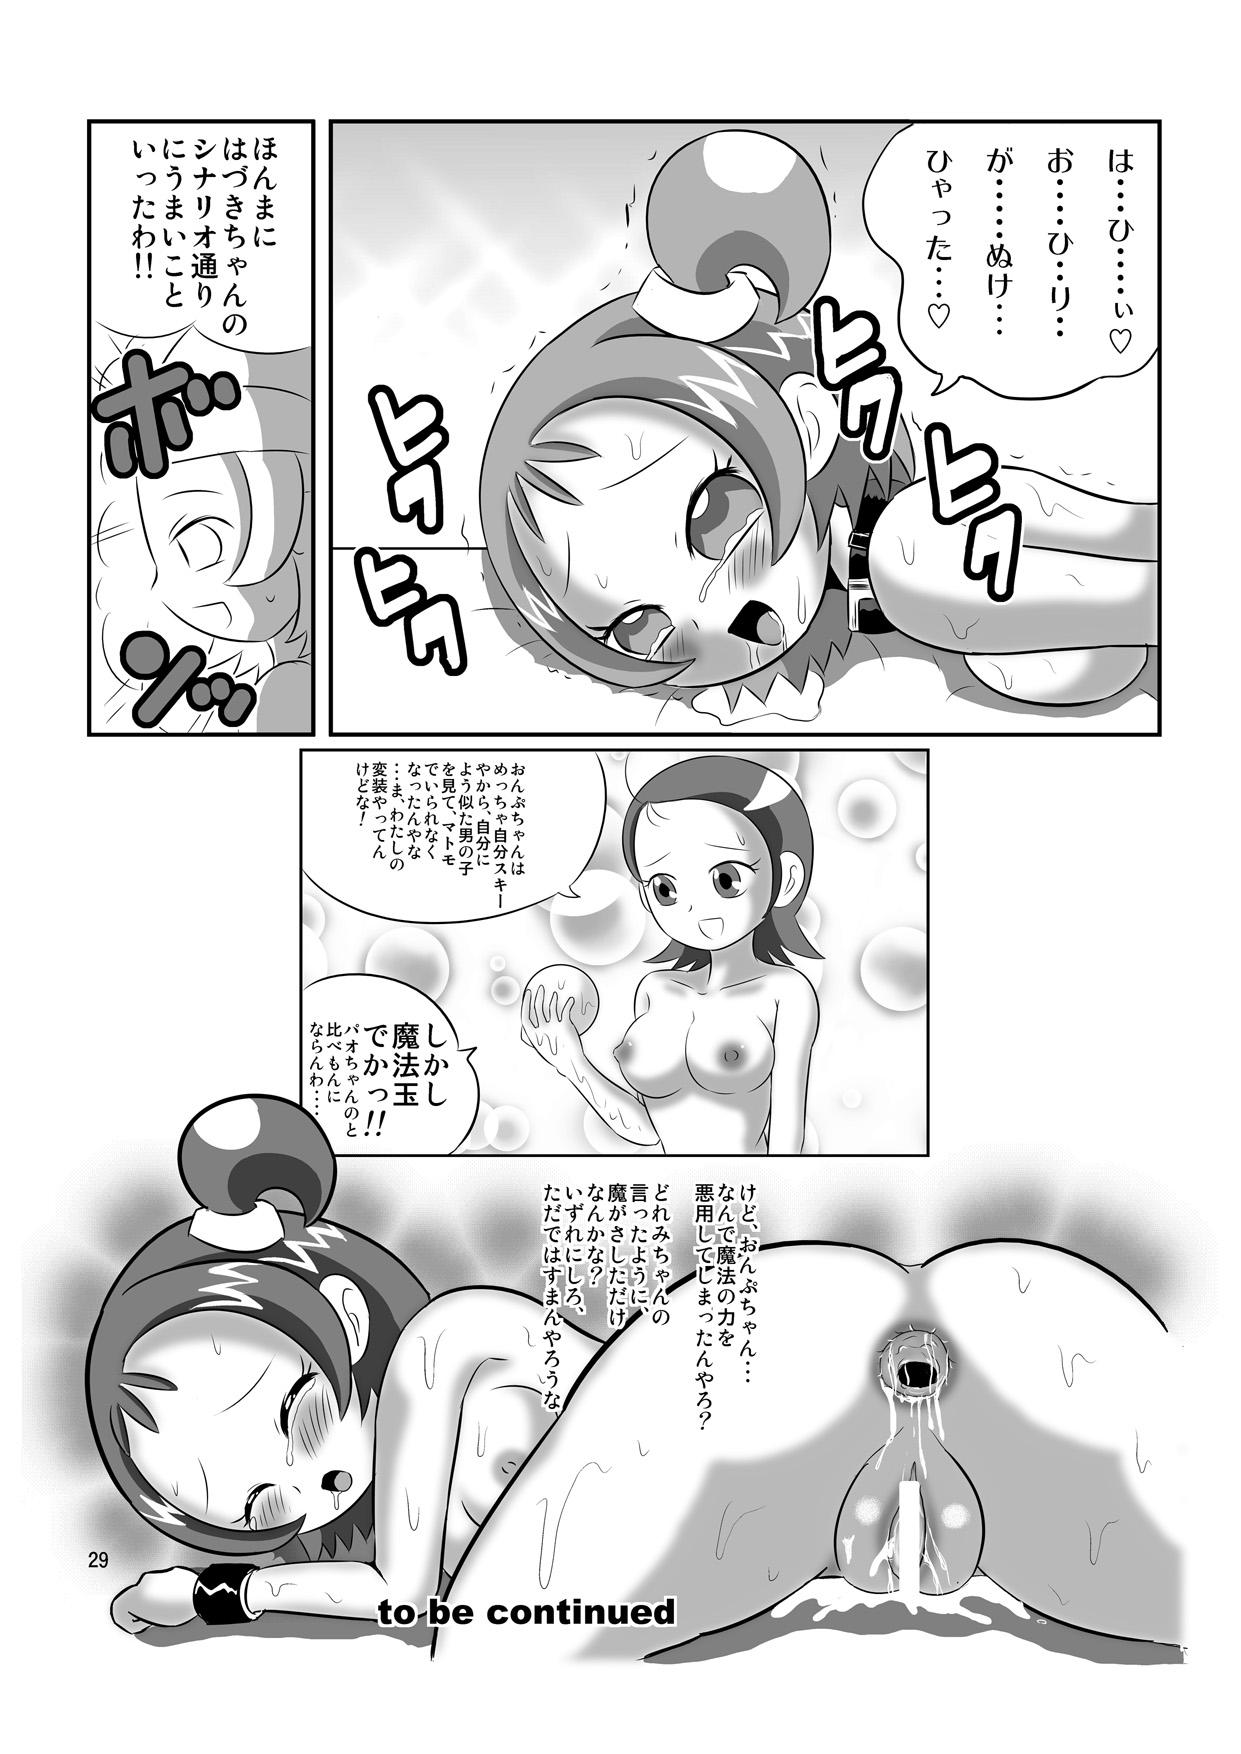 Phat Ass DEEP PURPLE 姦尻編 - Ojamajo doremi Alone - Page 28